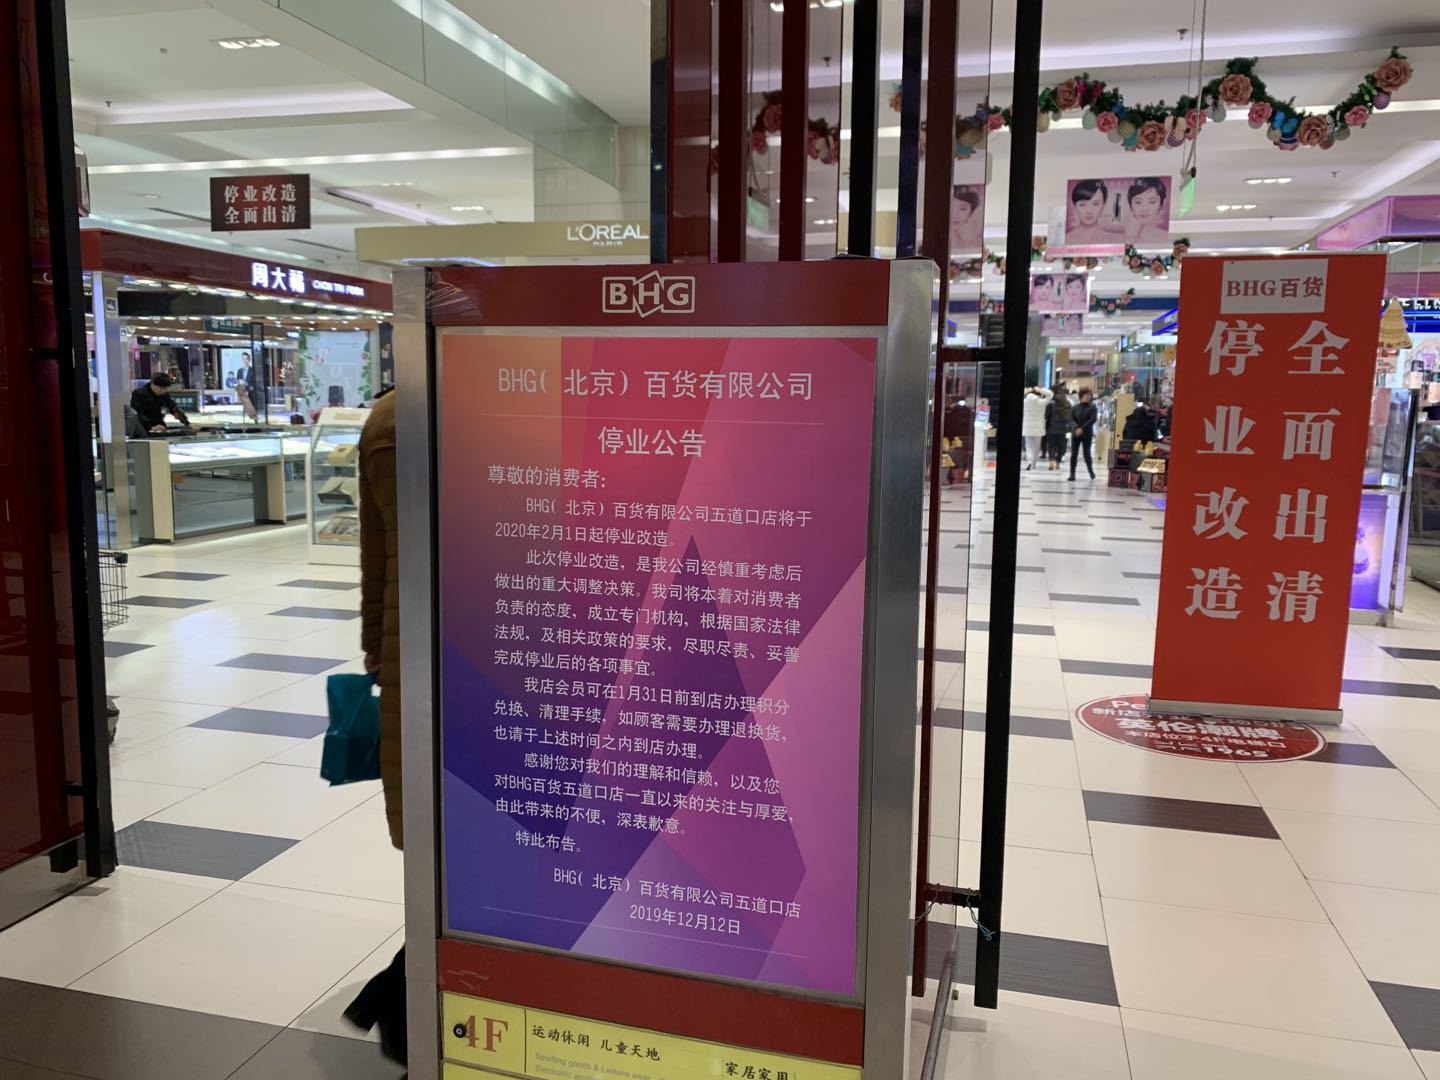 BHG(北京)百货有限公司五道口店发布停业公告 中国网财经记者 摄 